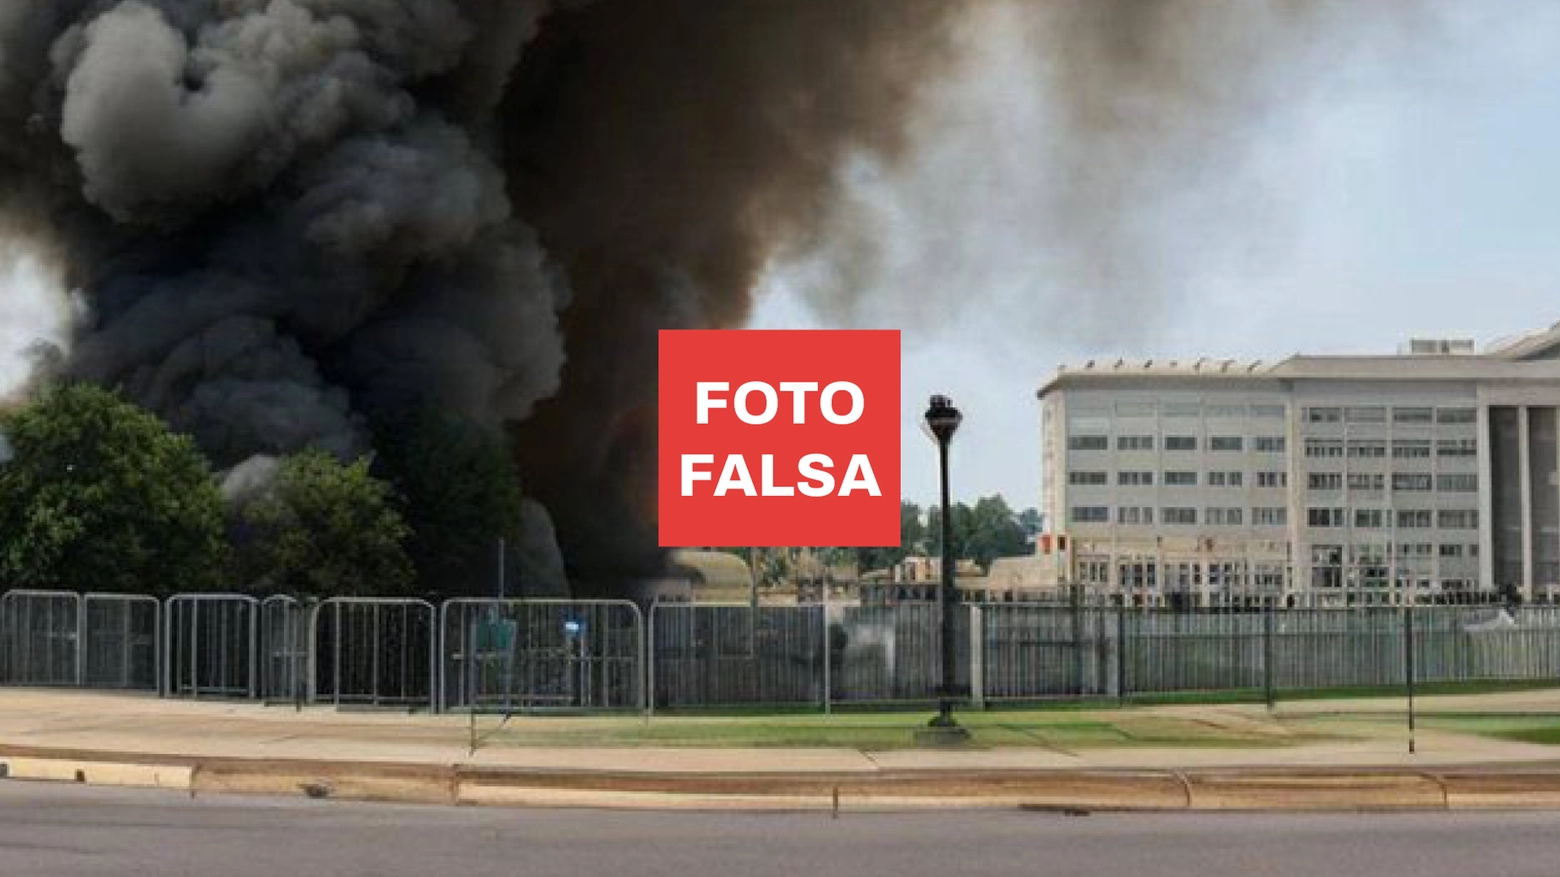 La foto falsa che pretende di raffigurare un'esplosione vicino al Pentagono